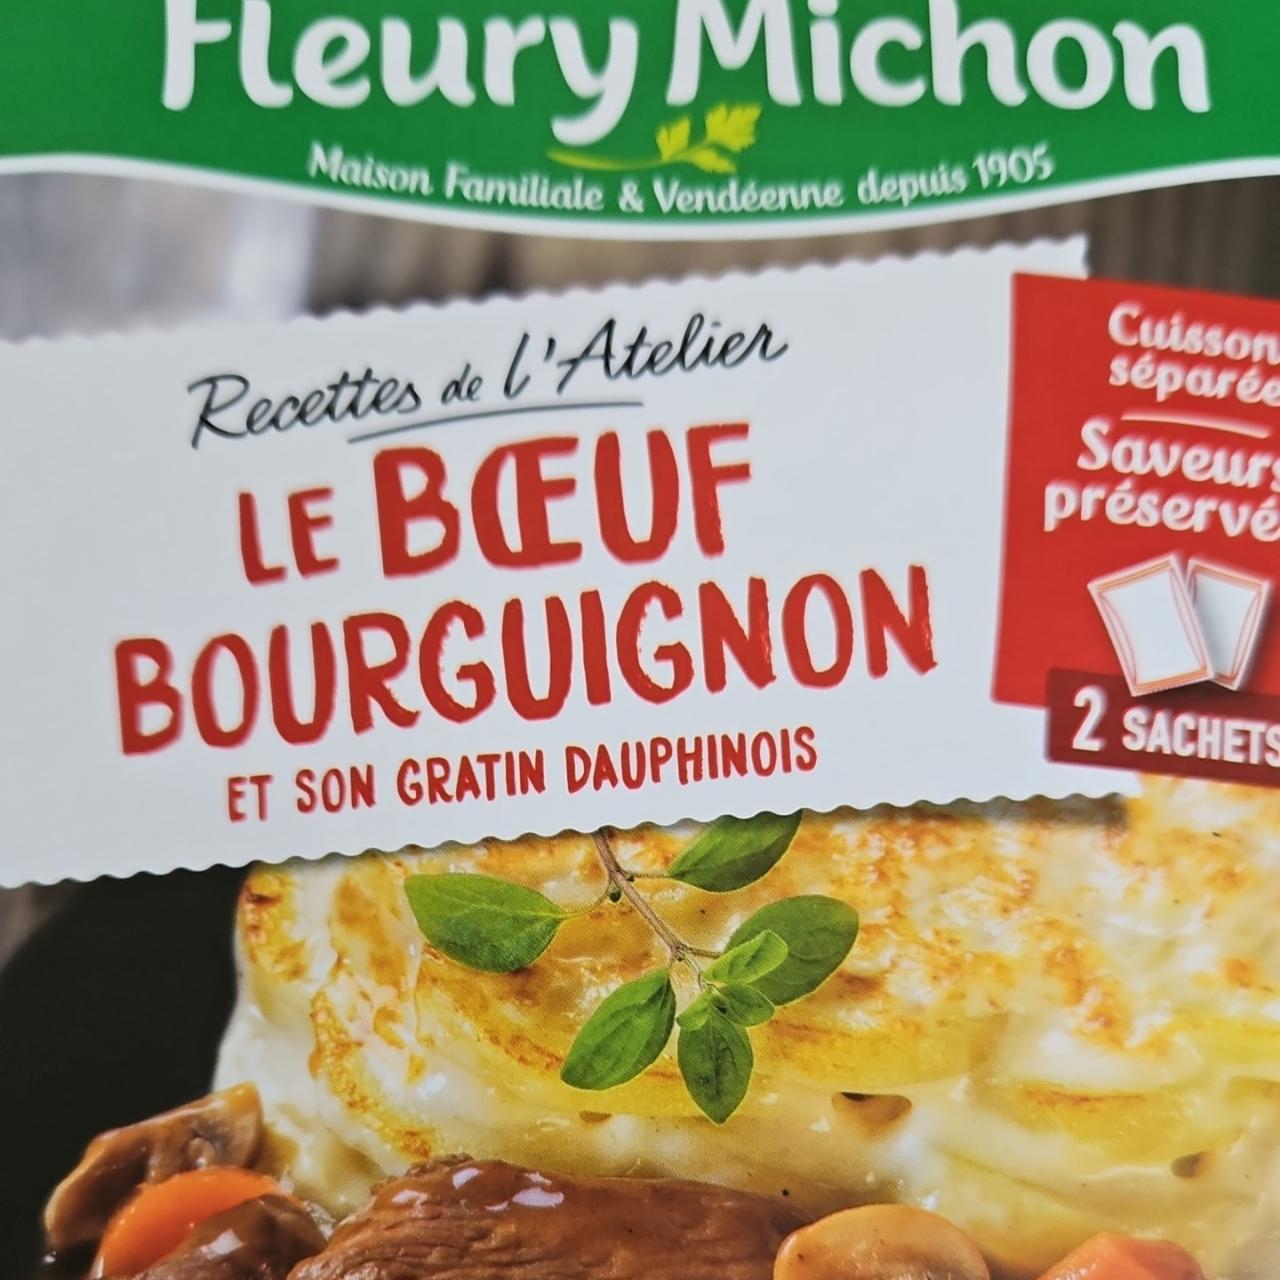 Fotografie - Le bœuf bourguignon et son gratin dauphinois Fleury Michon